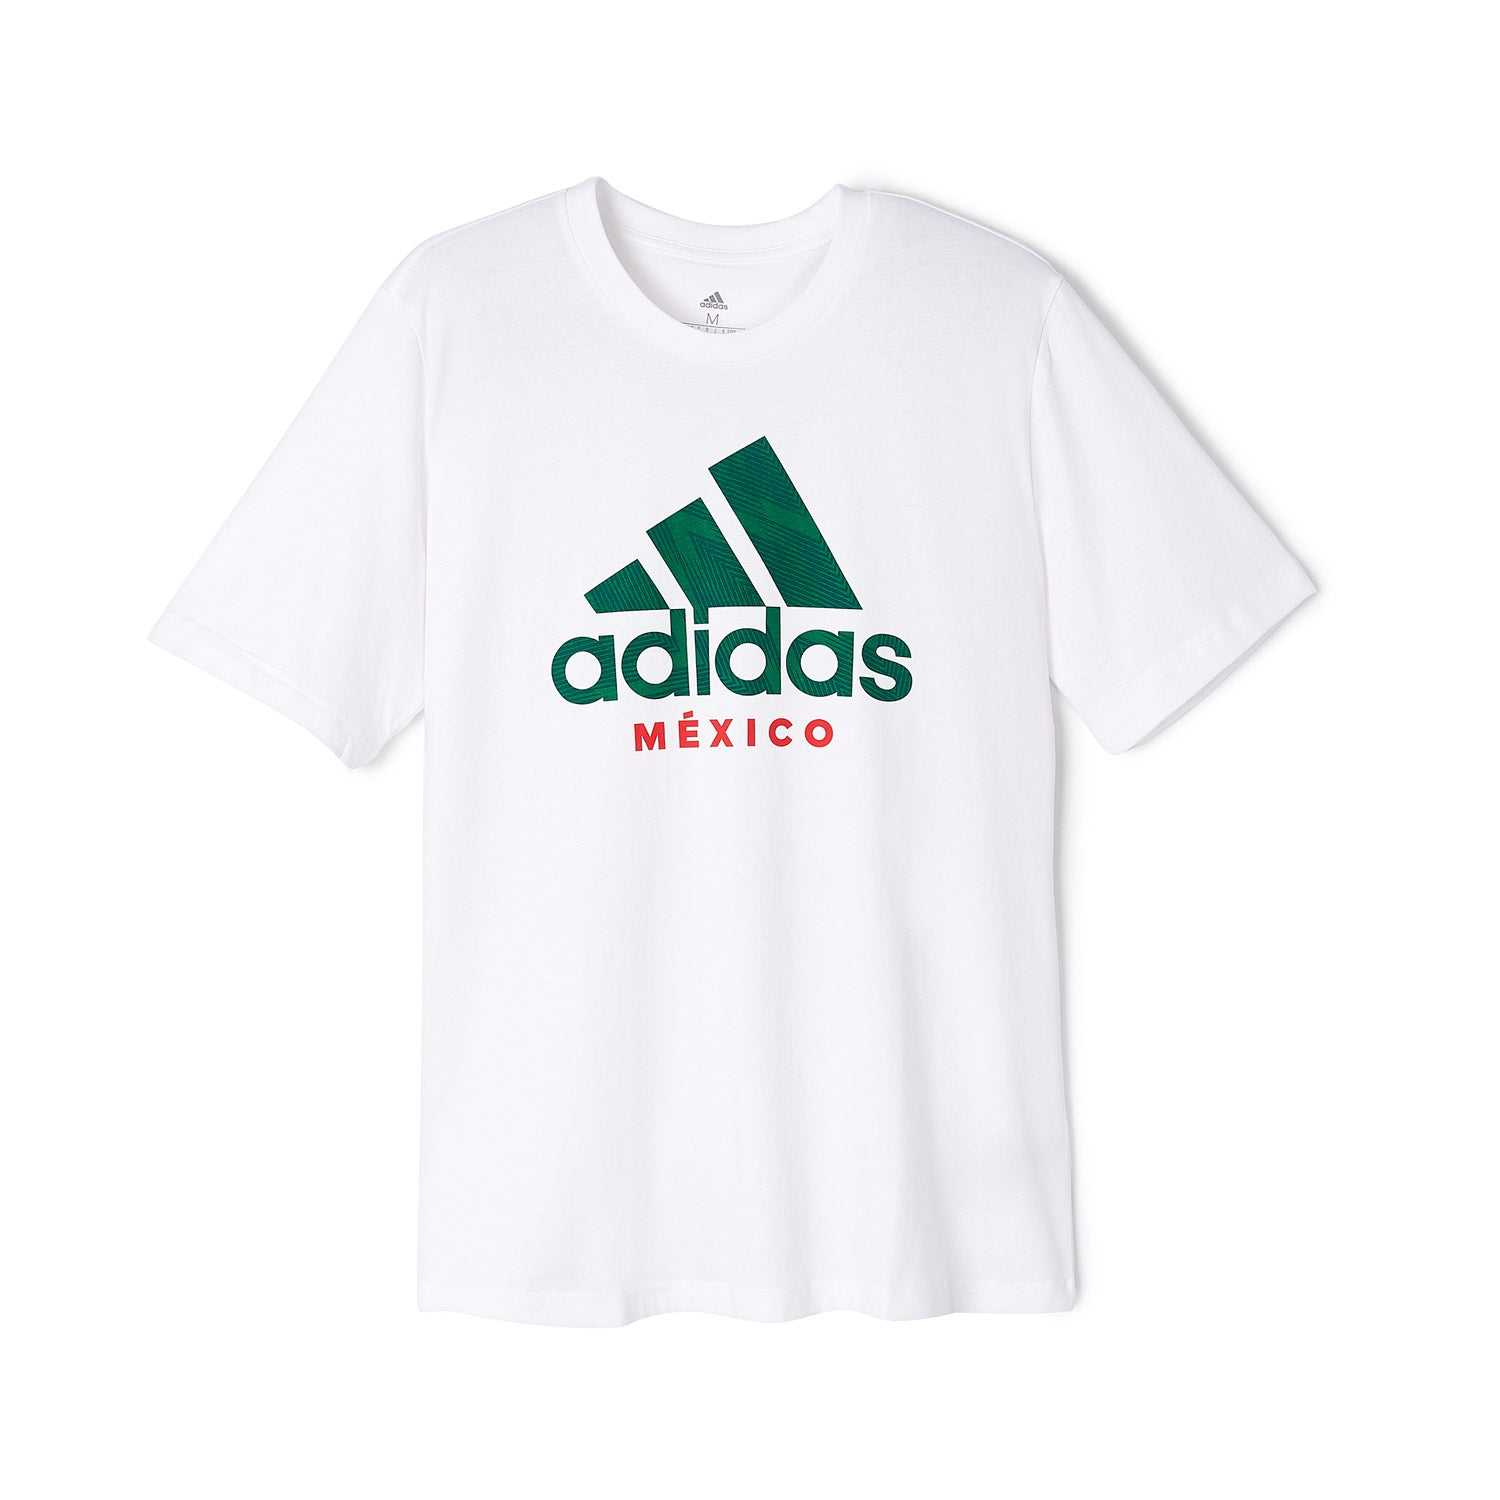 adidas Mexico DNA T-Shirt White - Men's